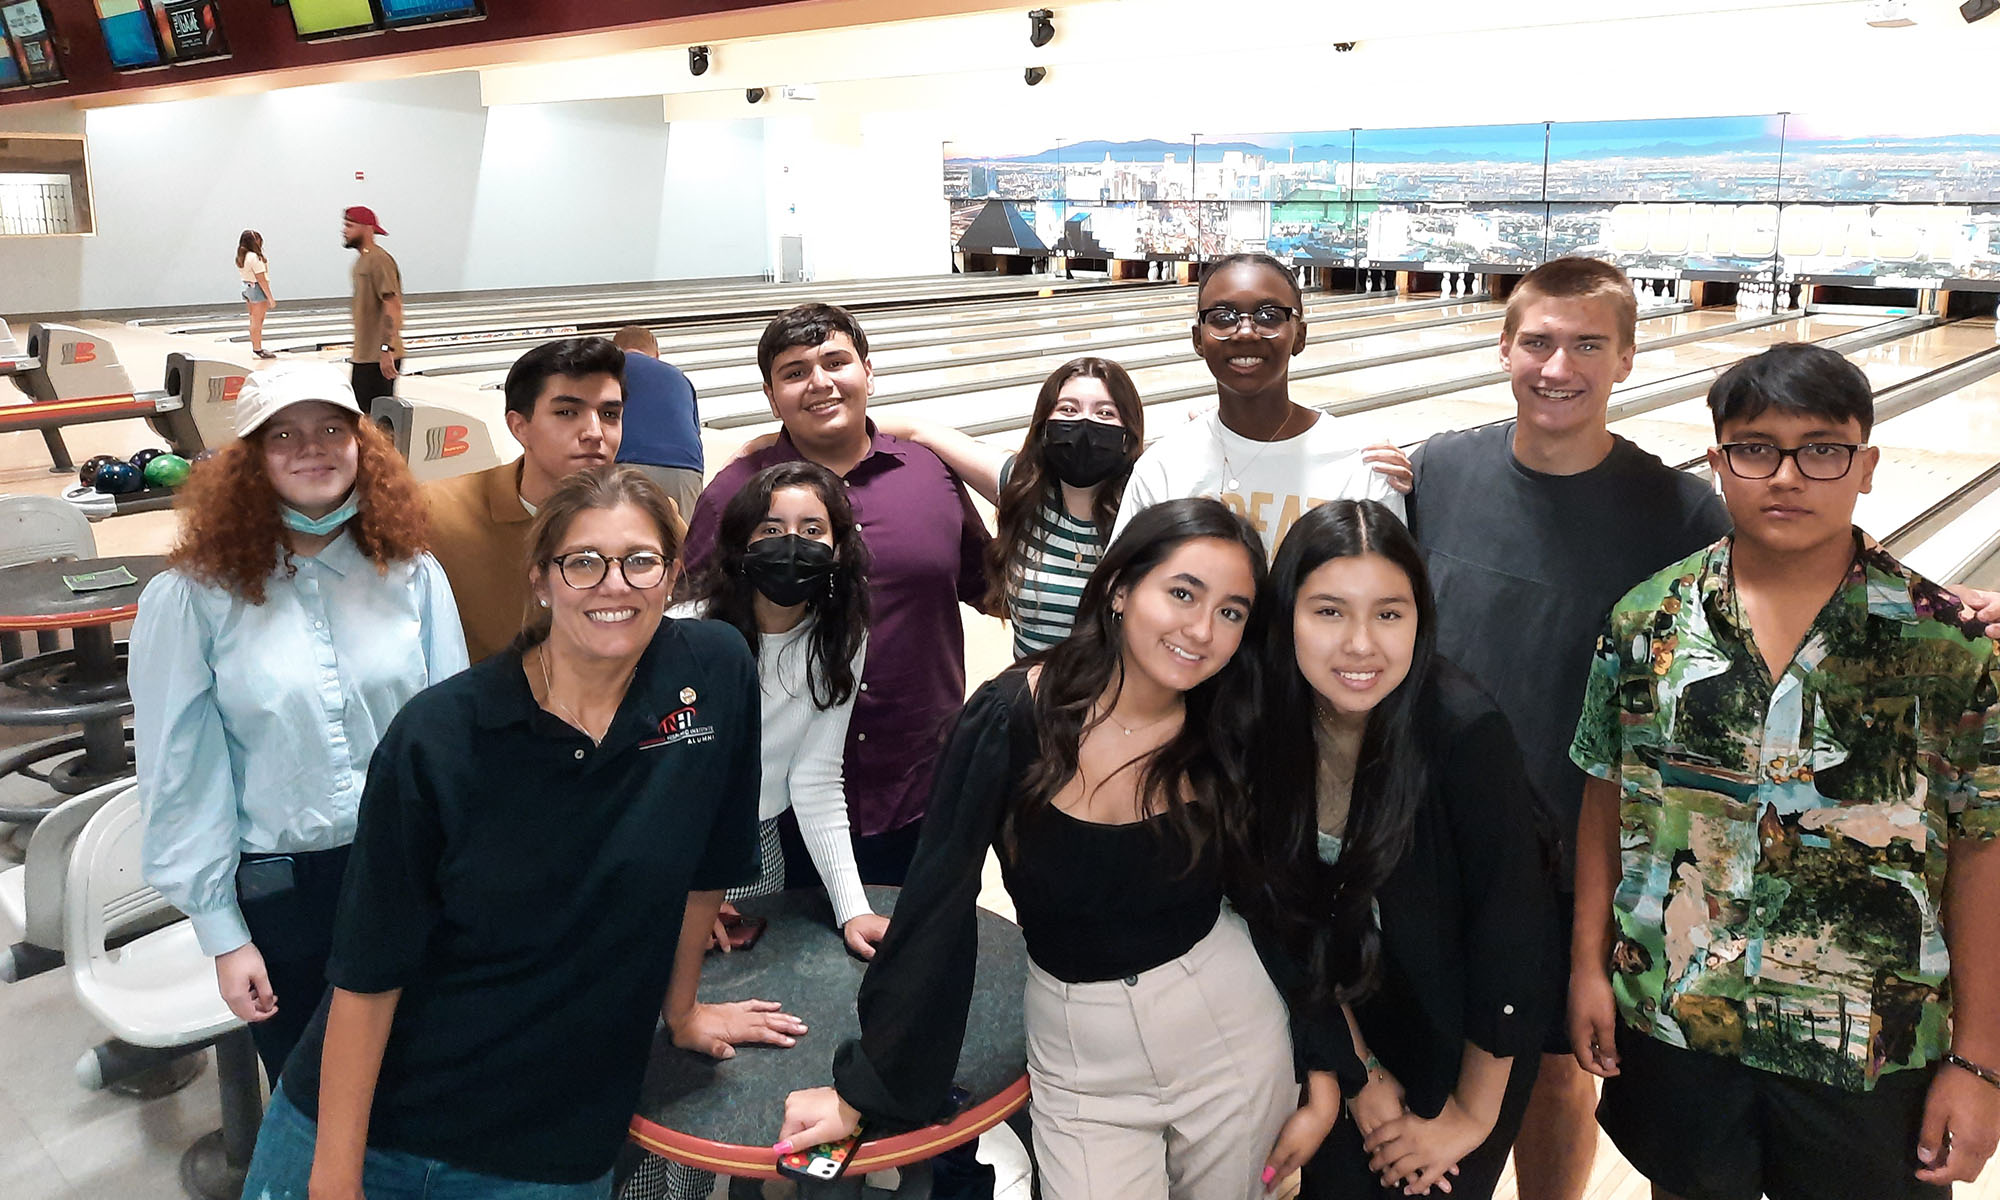 las vegas sands students bowling trip